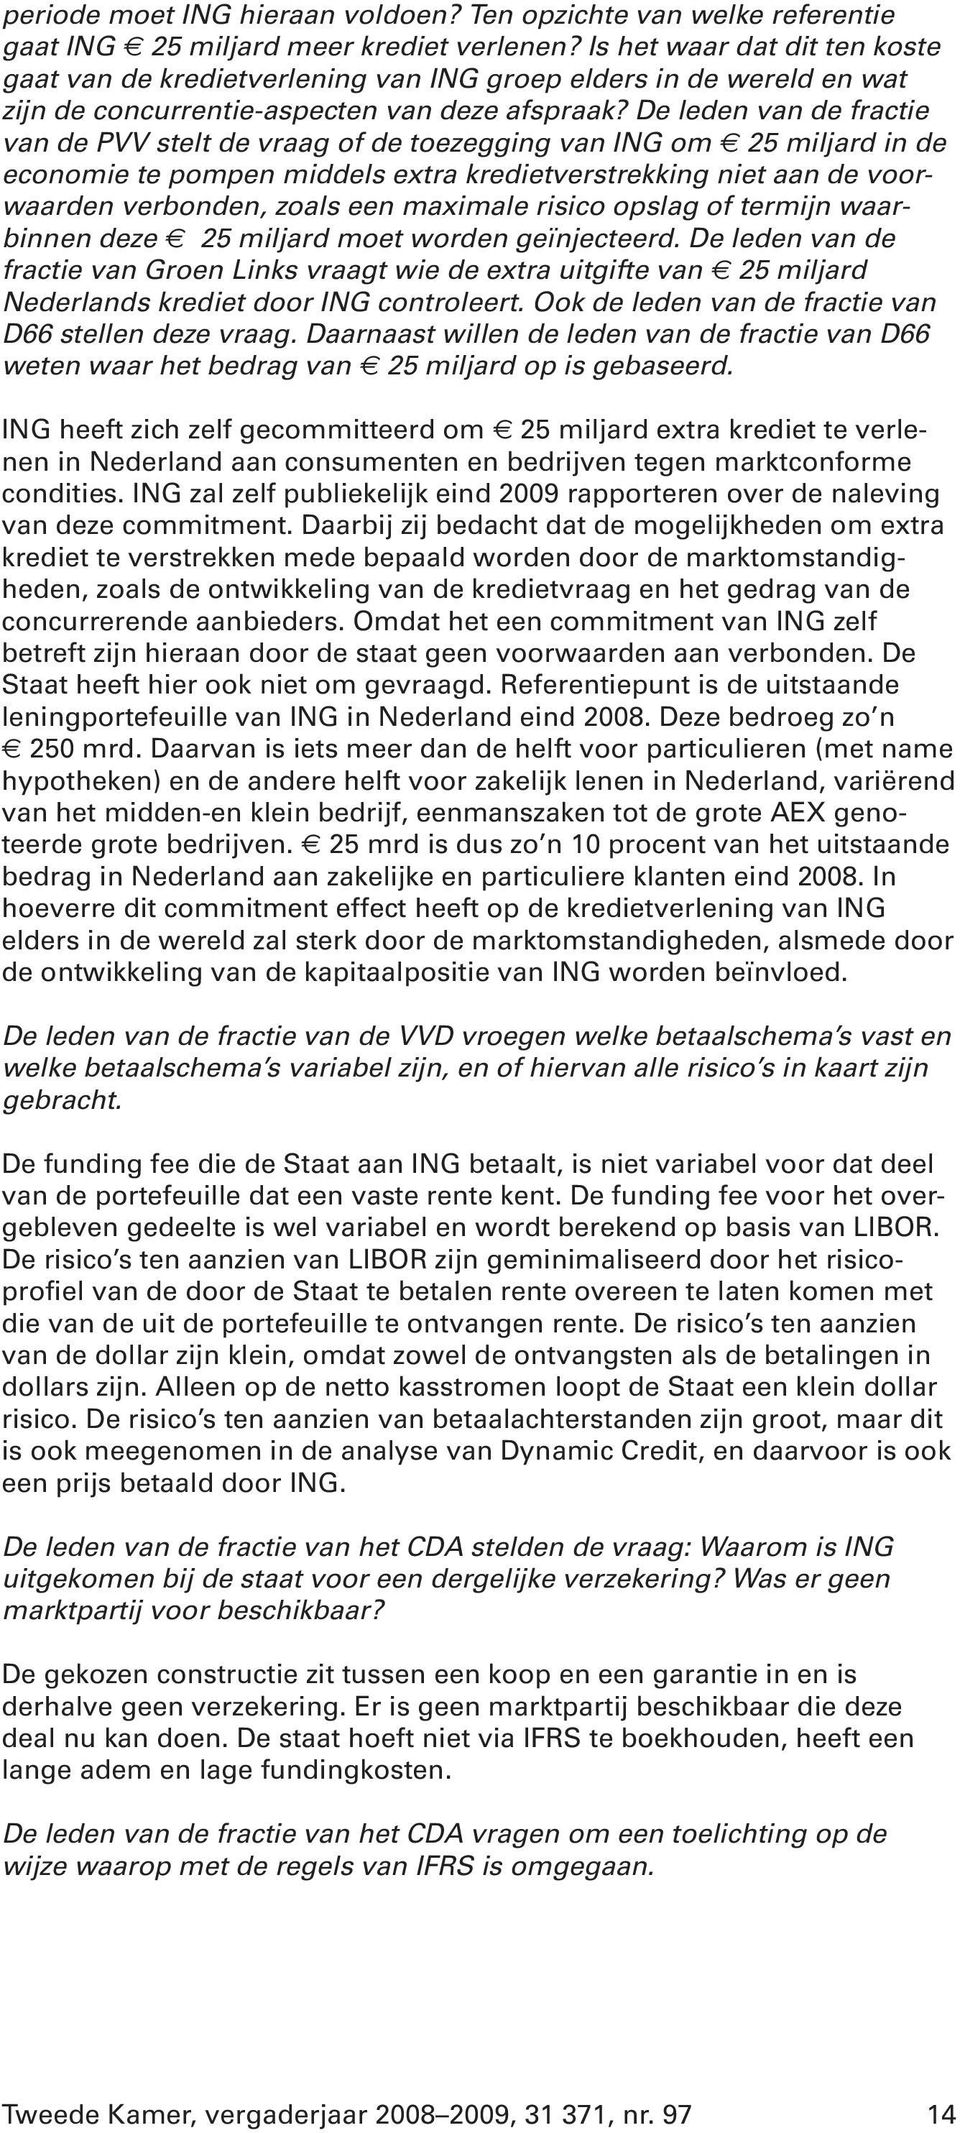 De leden van de fractie van de PVV stelt de vraag of de toezegging van ING om 25 miljard in de economie te pompen middels extra kredietverstrekking niet aan de voorwaarden verbonden, zoals een